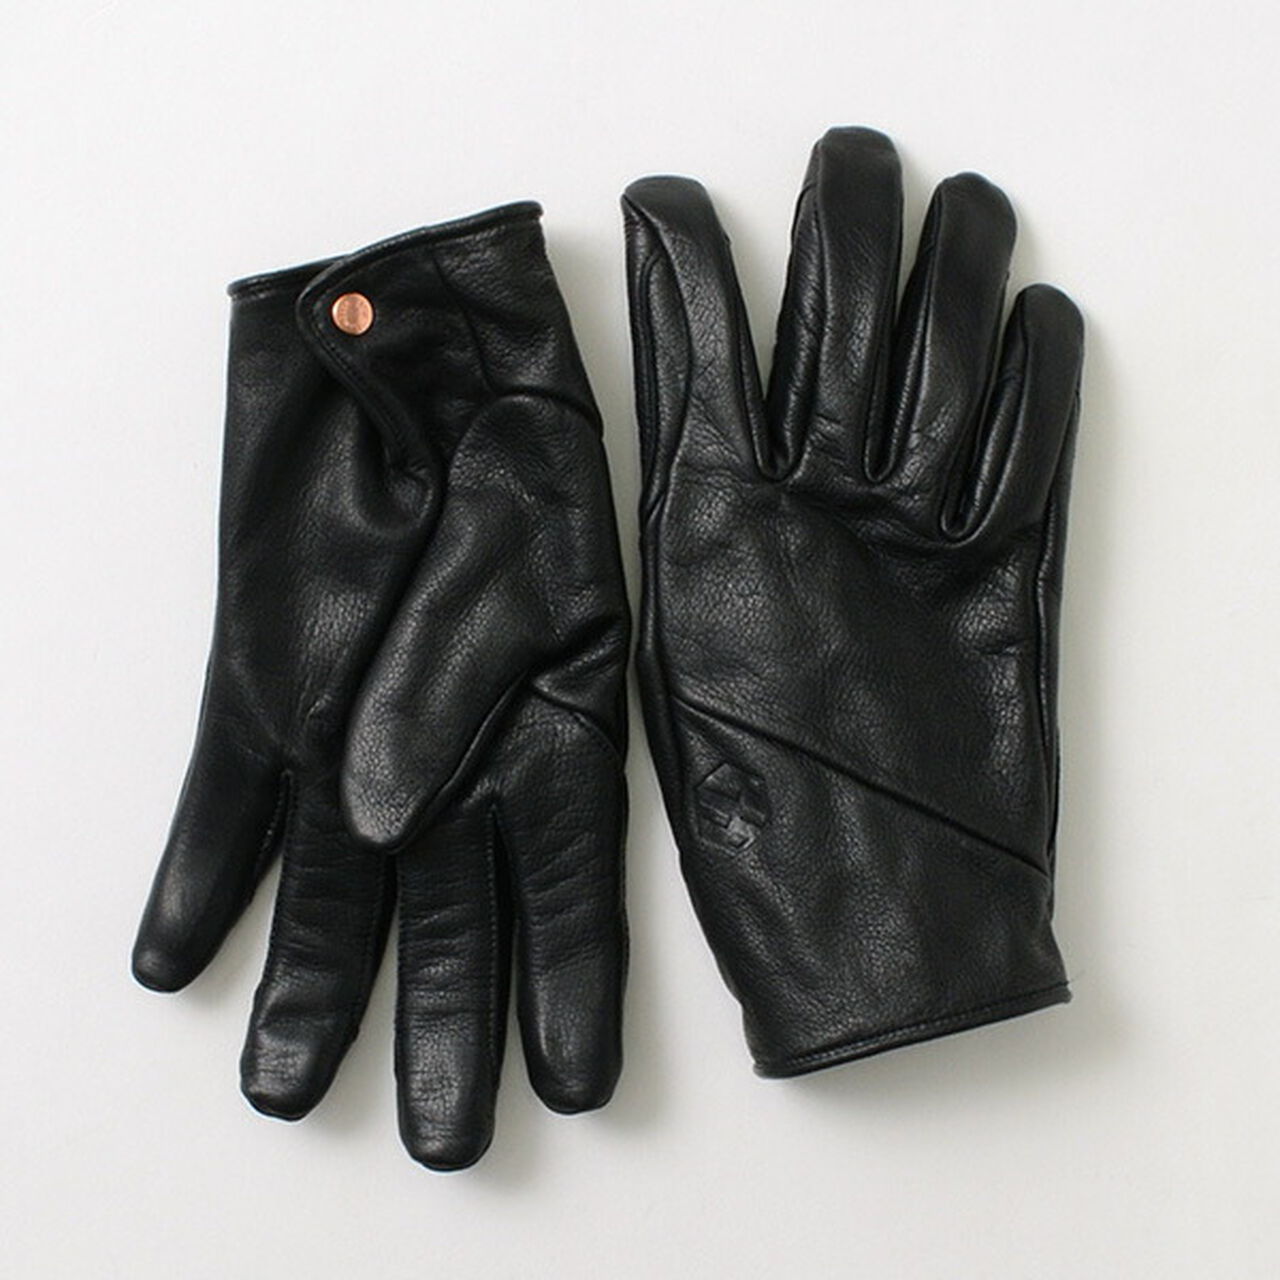 FAM + gloves,Black, large image number 0